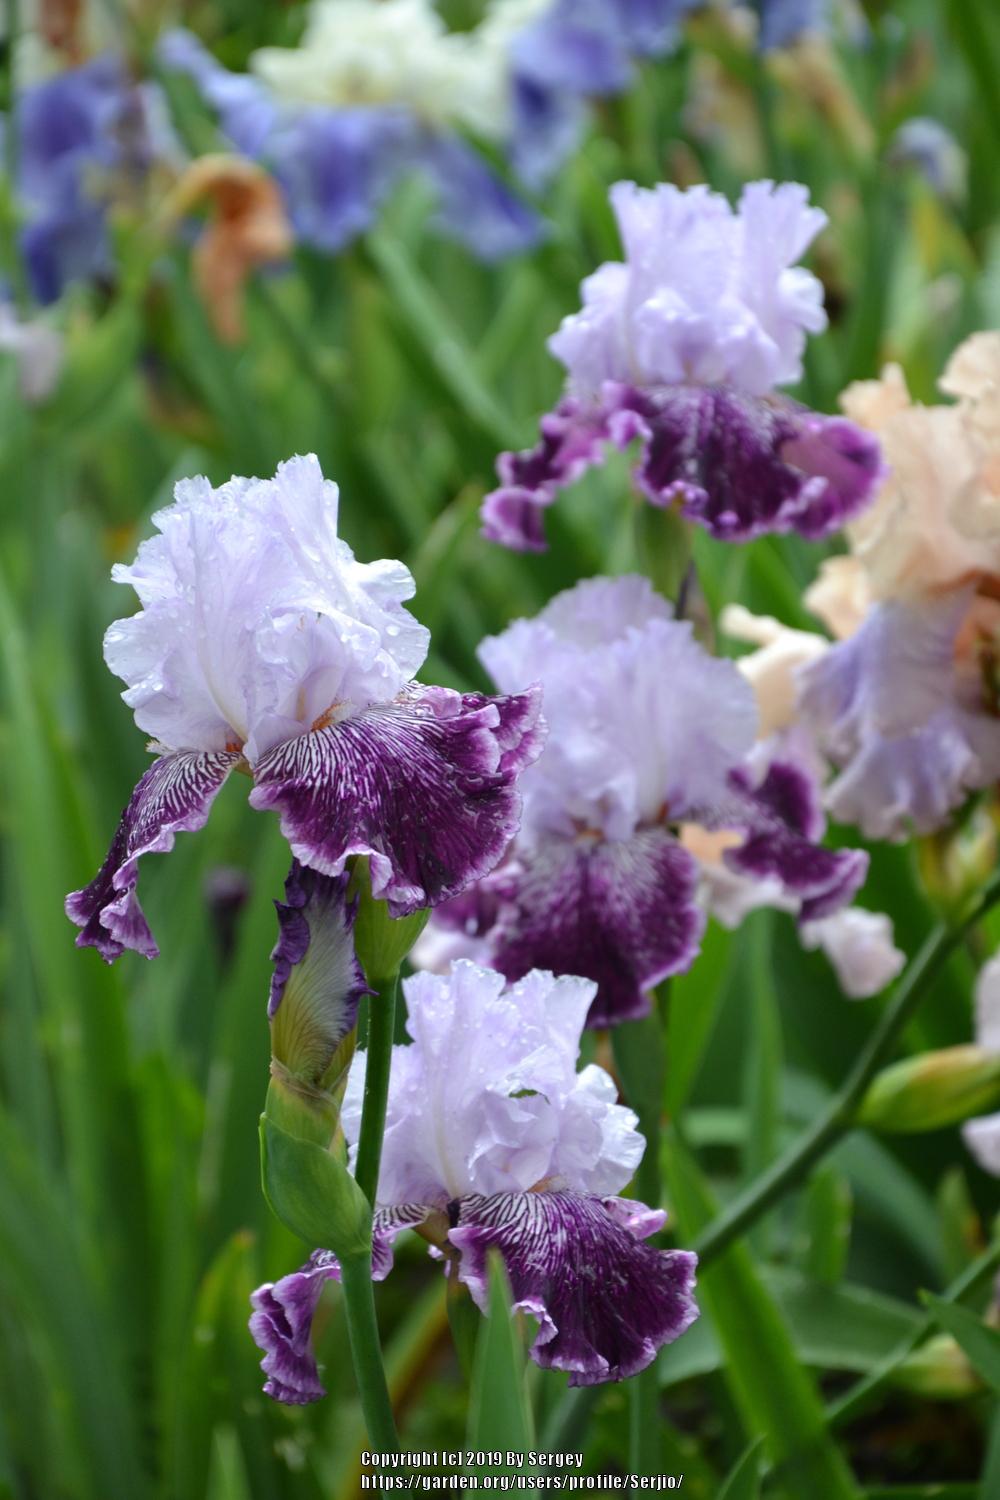 Photo of Tall Bearded Iris (Iris 'Gypsy Geena') uploaded by Serjio